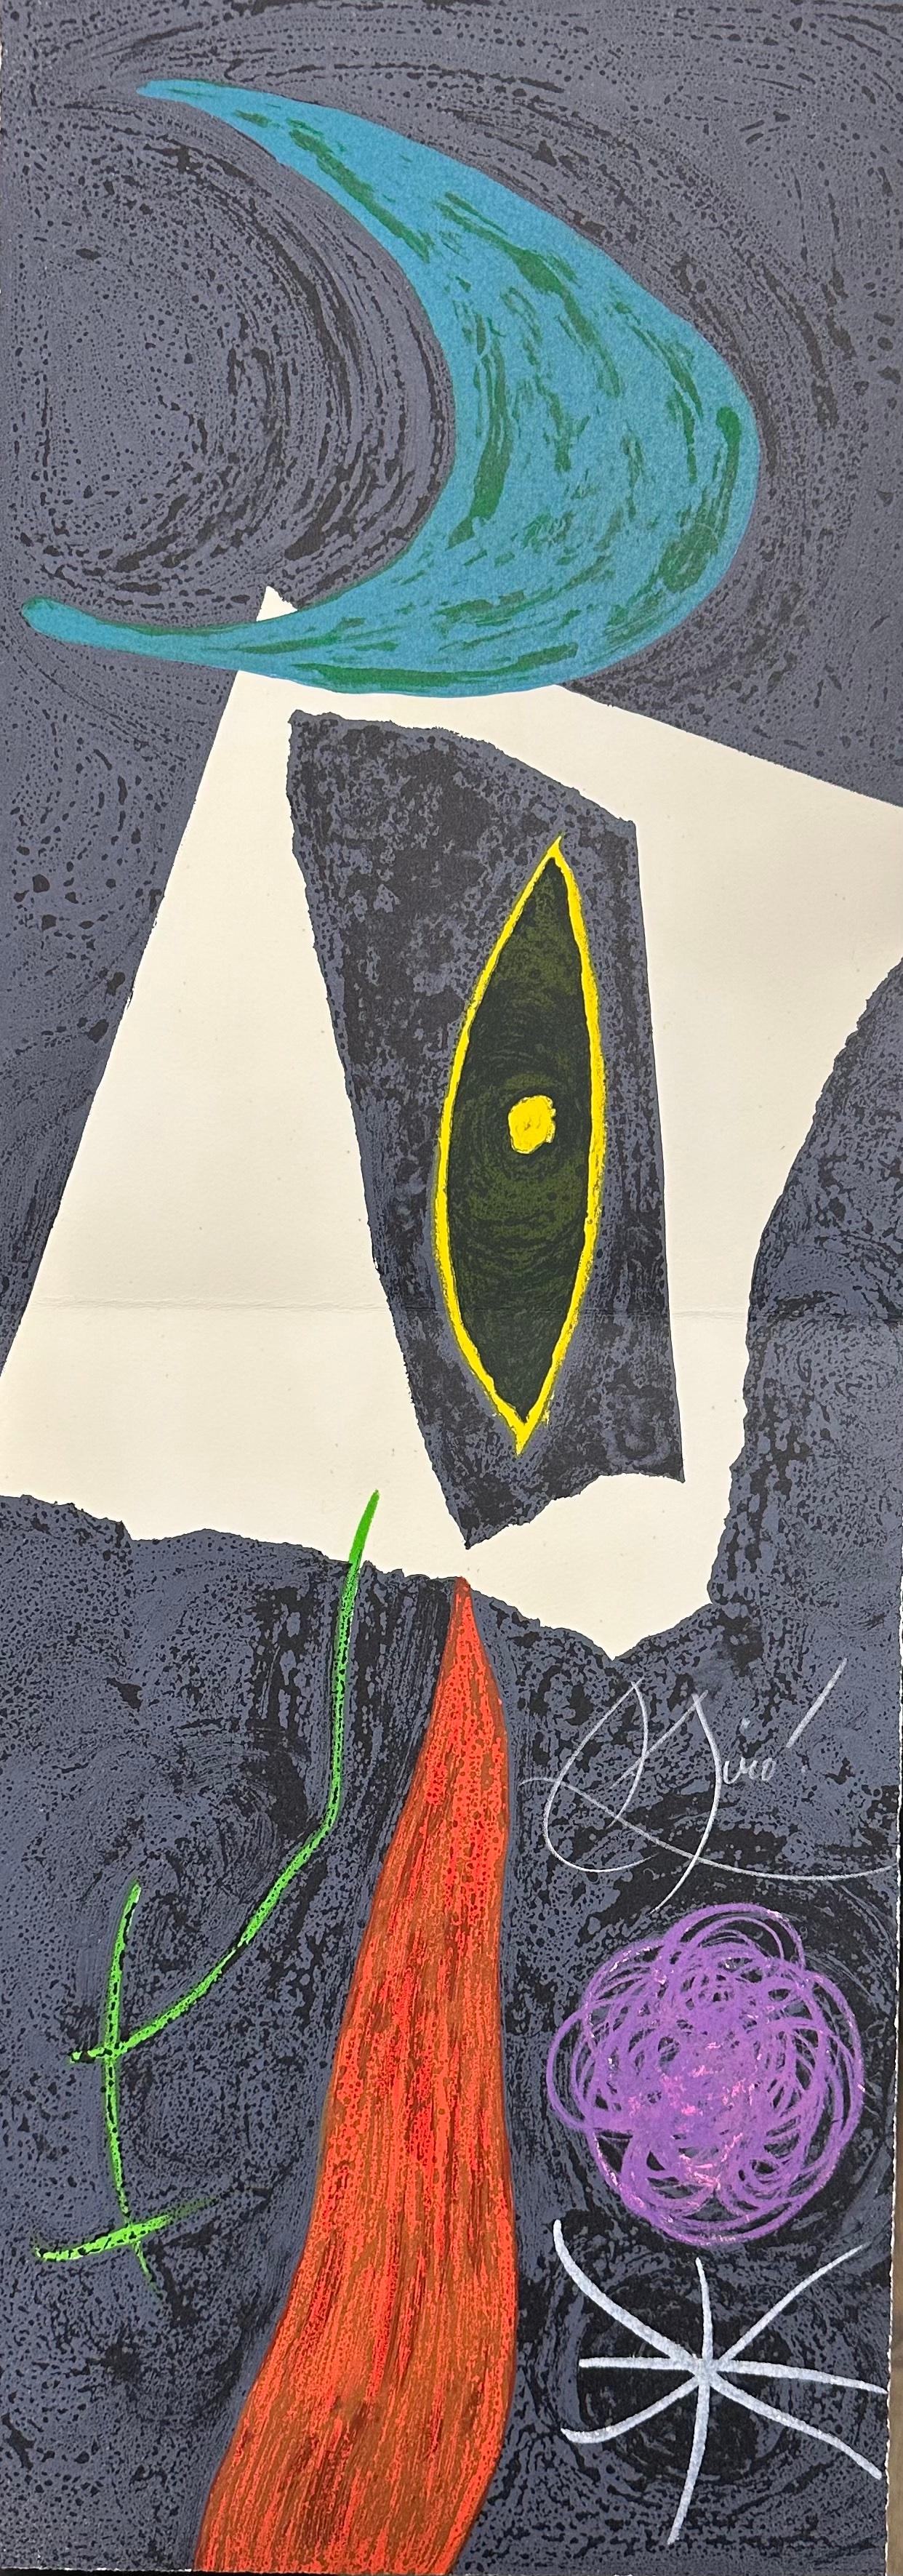 Joan Miró
M.987 aus "Les Pénaltiés de l'enfer ou les Nouvelles-Hébrides"
1974
Handsigniert in weißer Kreide
Aus einer signierten Auflage von 50 Stück, mit dem Vermerk EA/50, gefaltet (wie ausgestellt)
Mourlot 987, Cramer bk.188 
29,5 x 10,5 Zoll